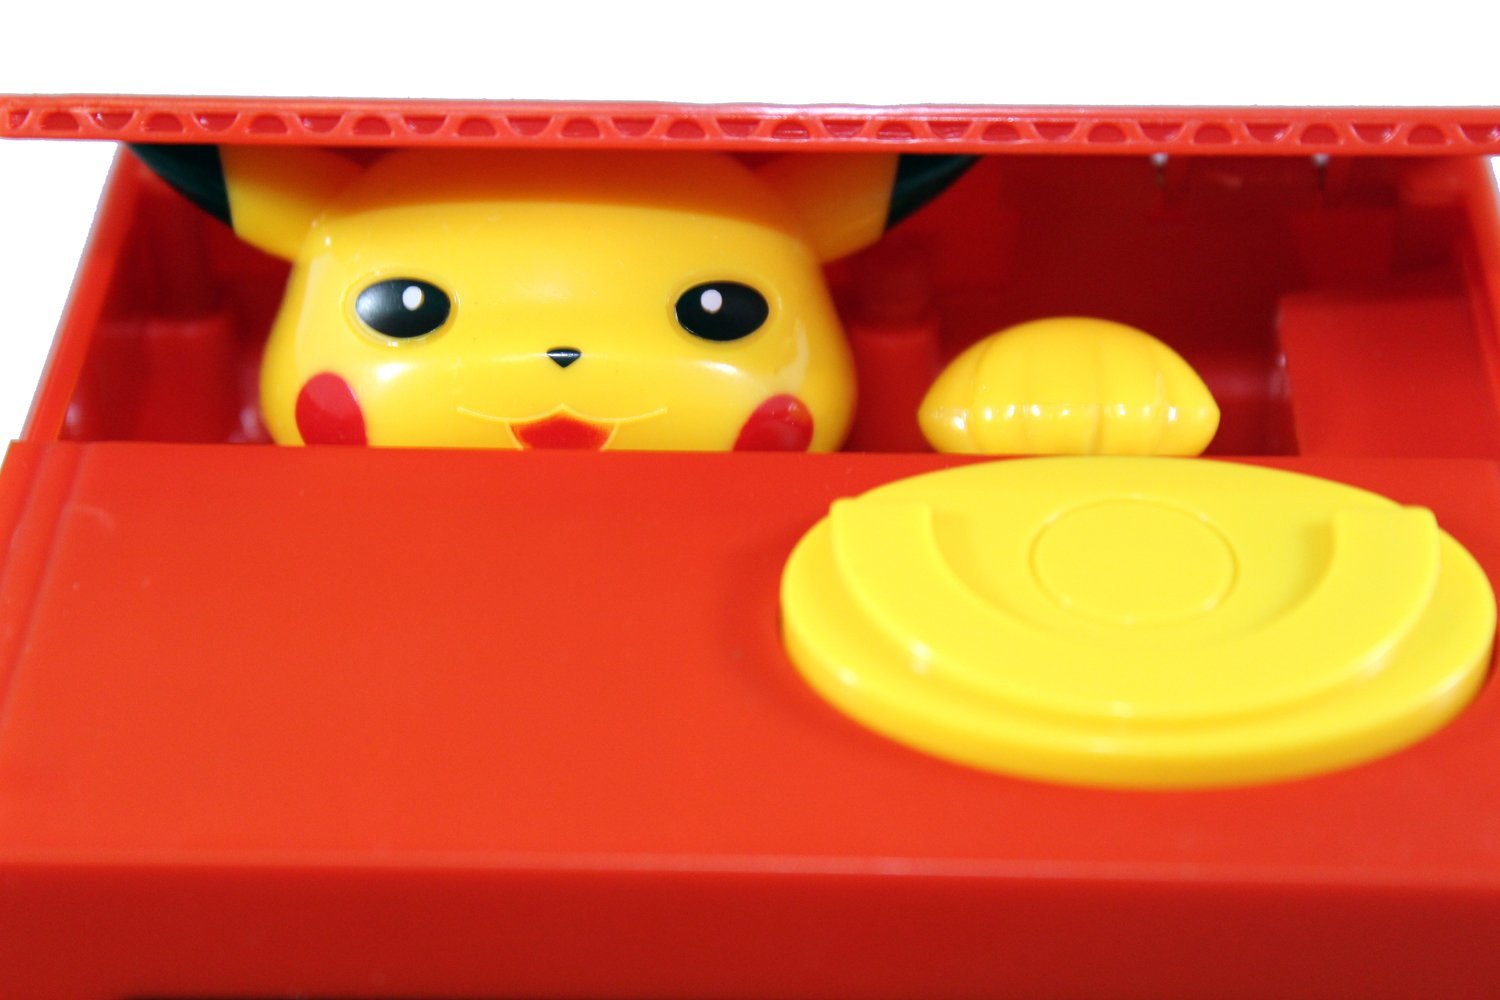 Pokémon Pikachu Elektronische Sparbüchse Spardose Münz Geld Geschenk Kind Kinder Fanartikel Sammeln 2